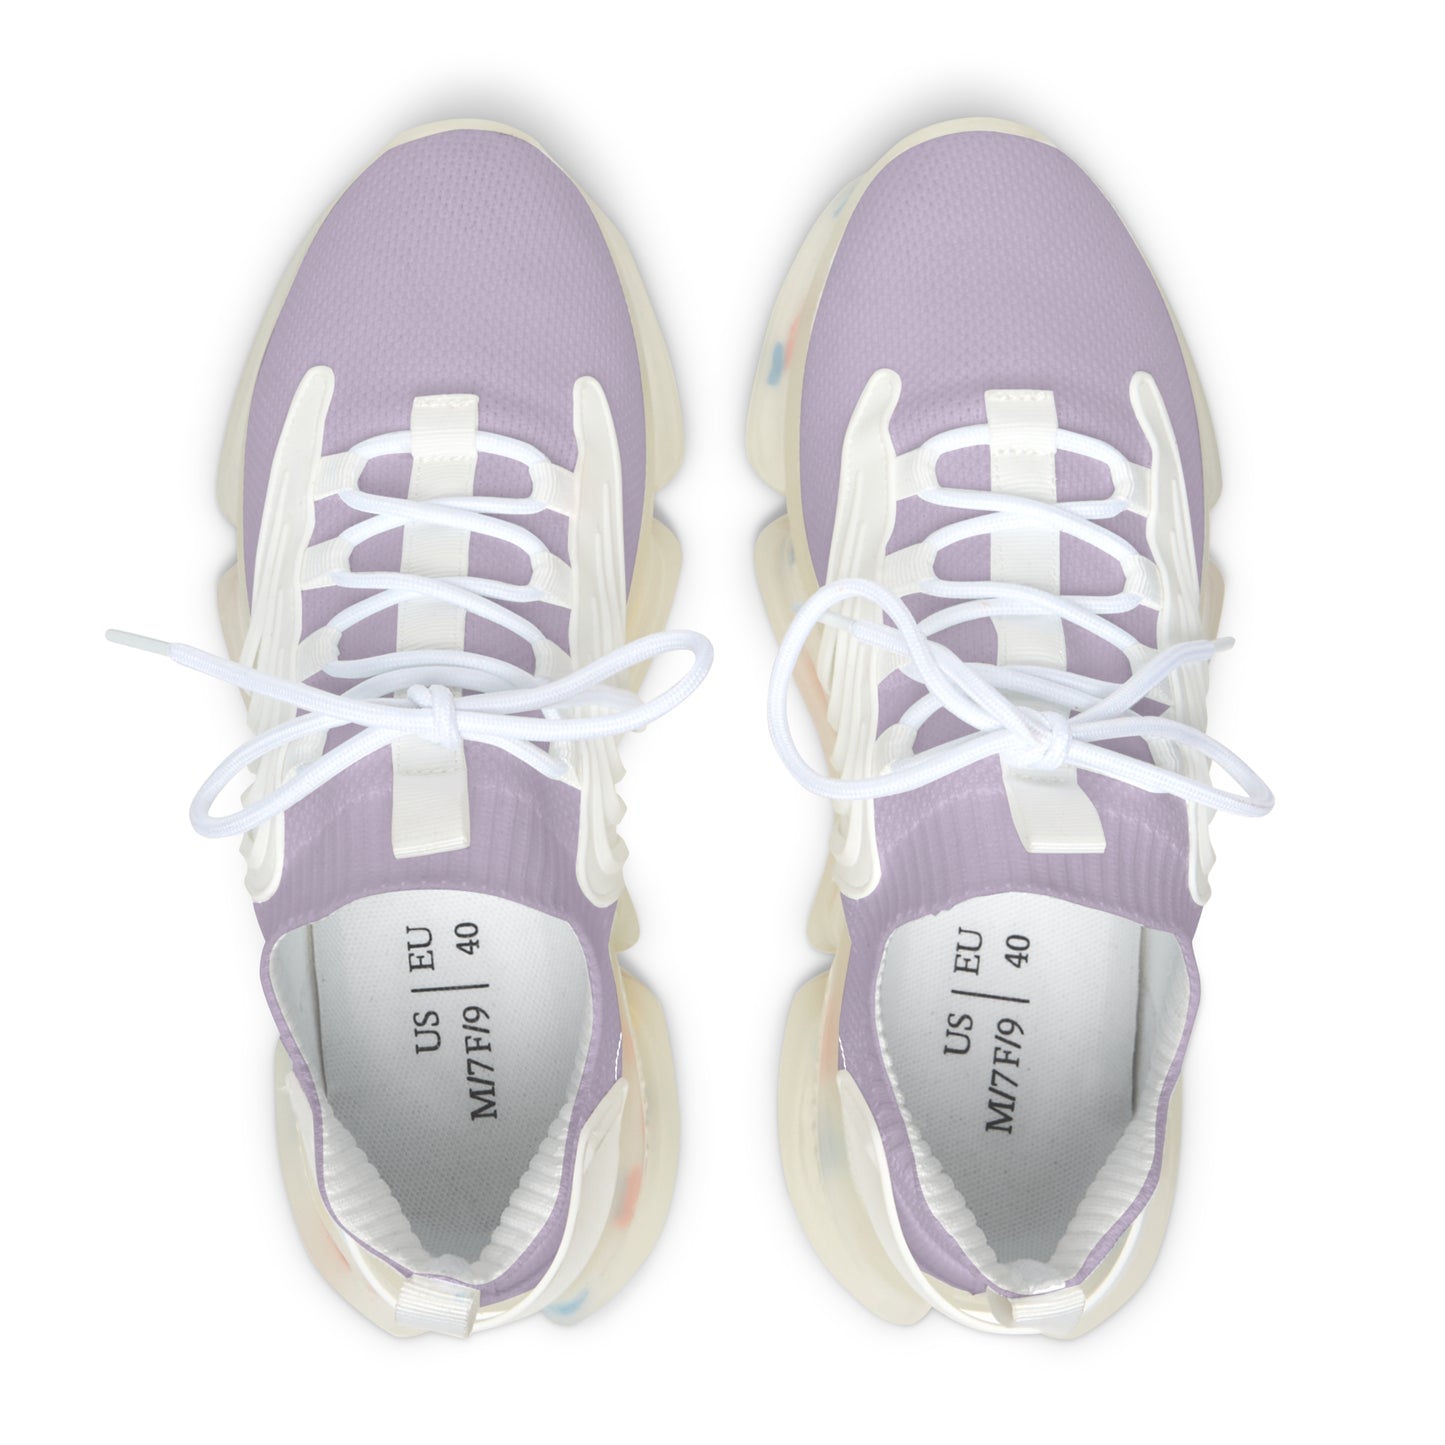 Aaryk Jade Lavender Women's Mesh Sneakers